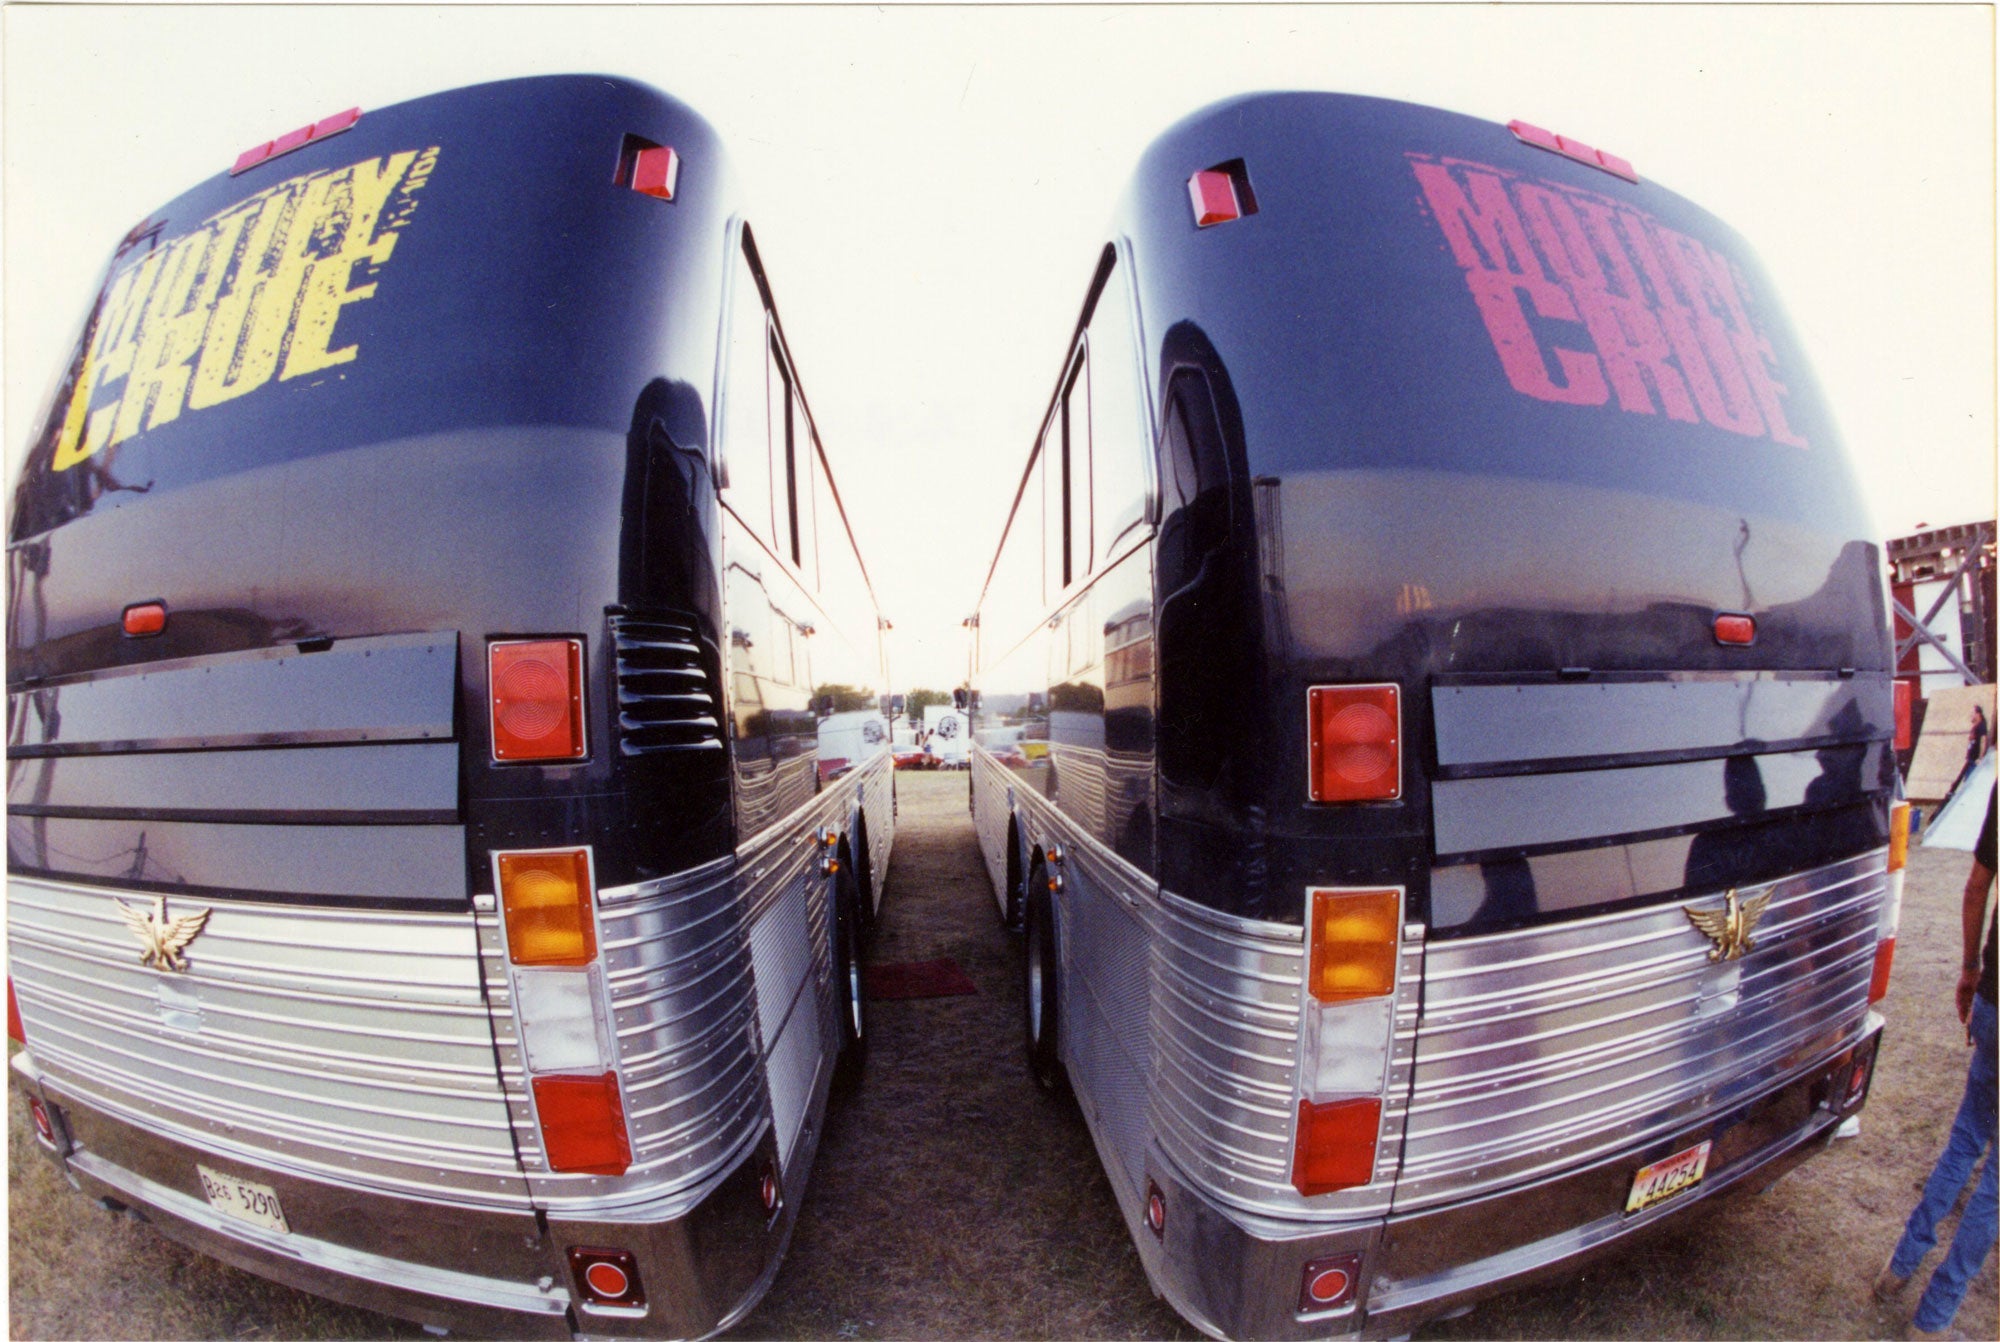 Tour Busses, 1994